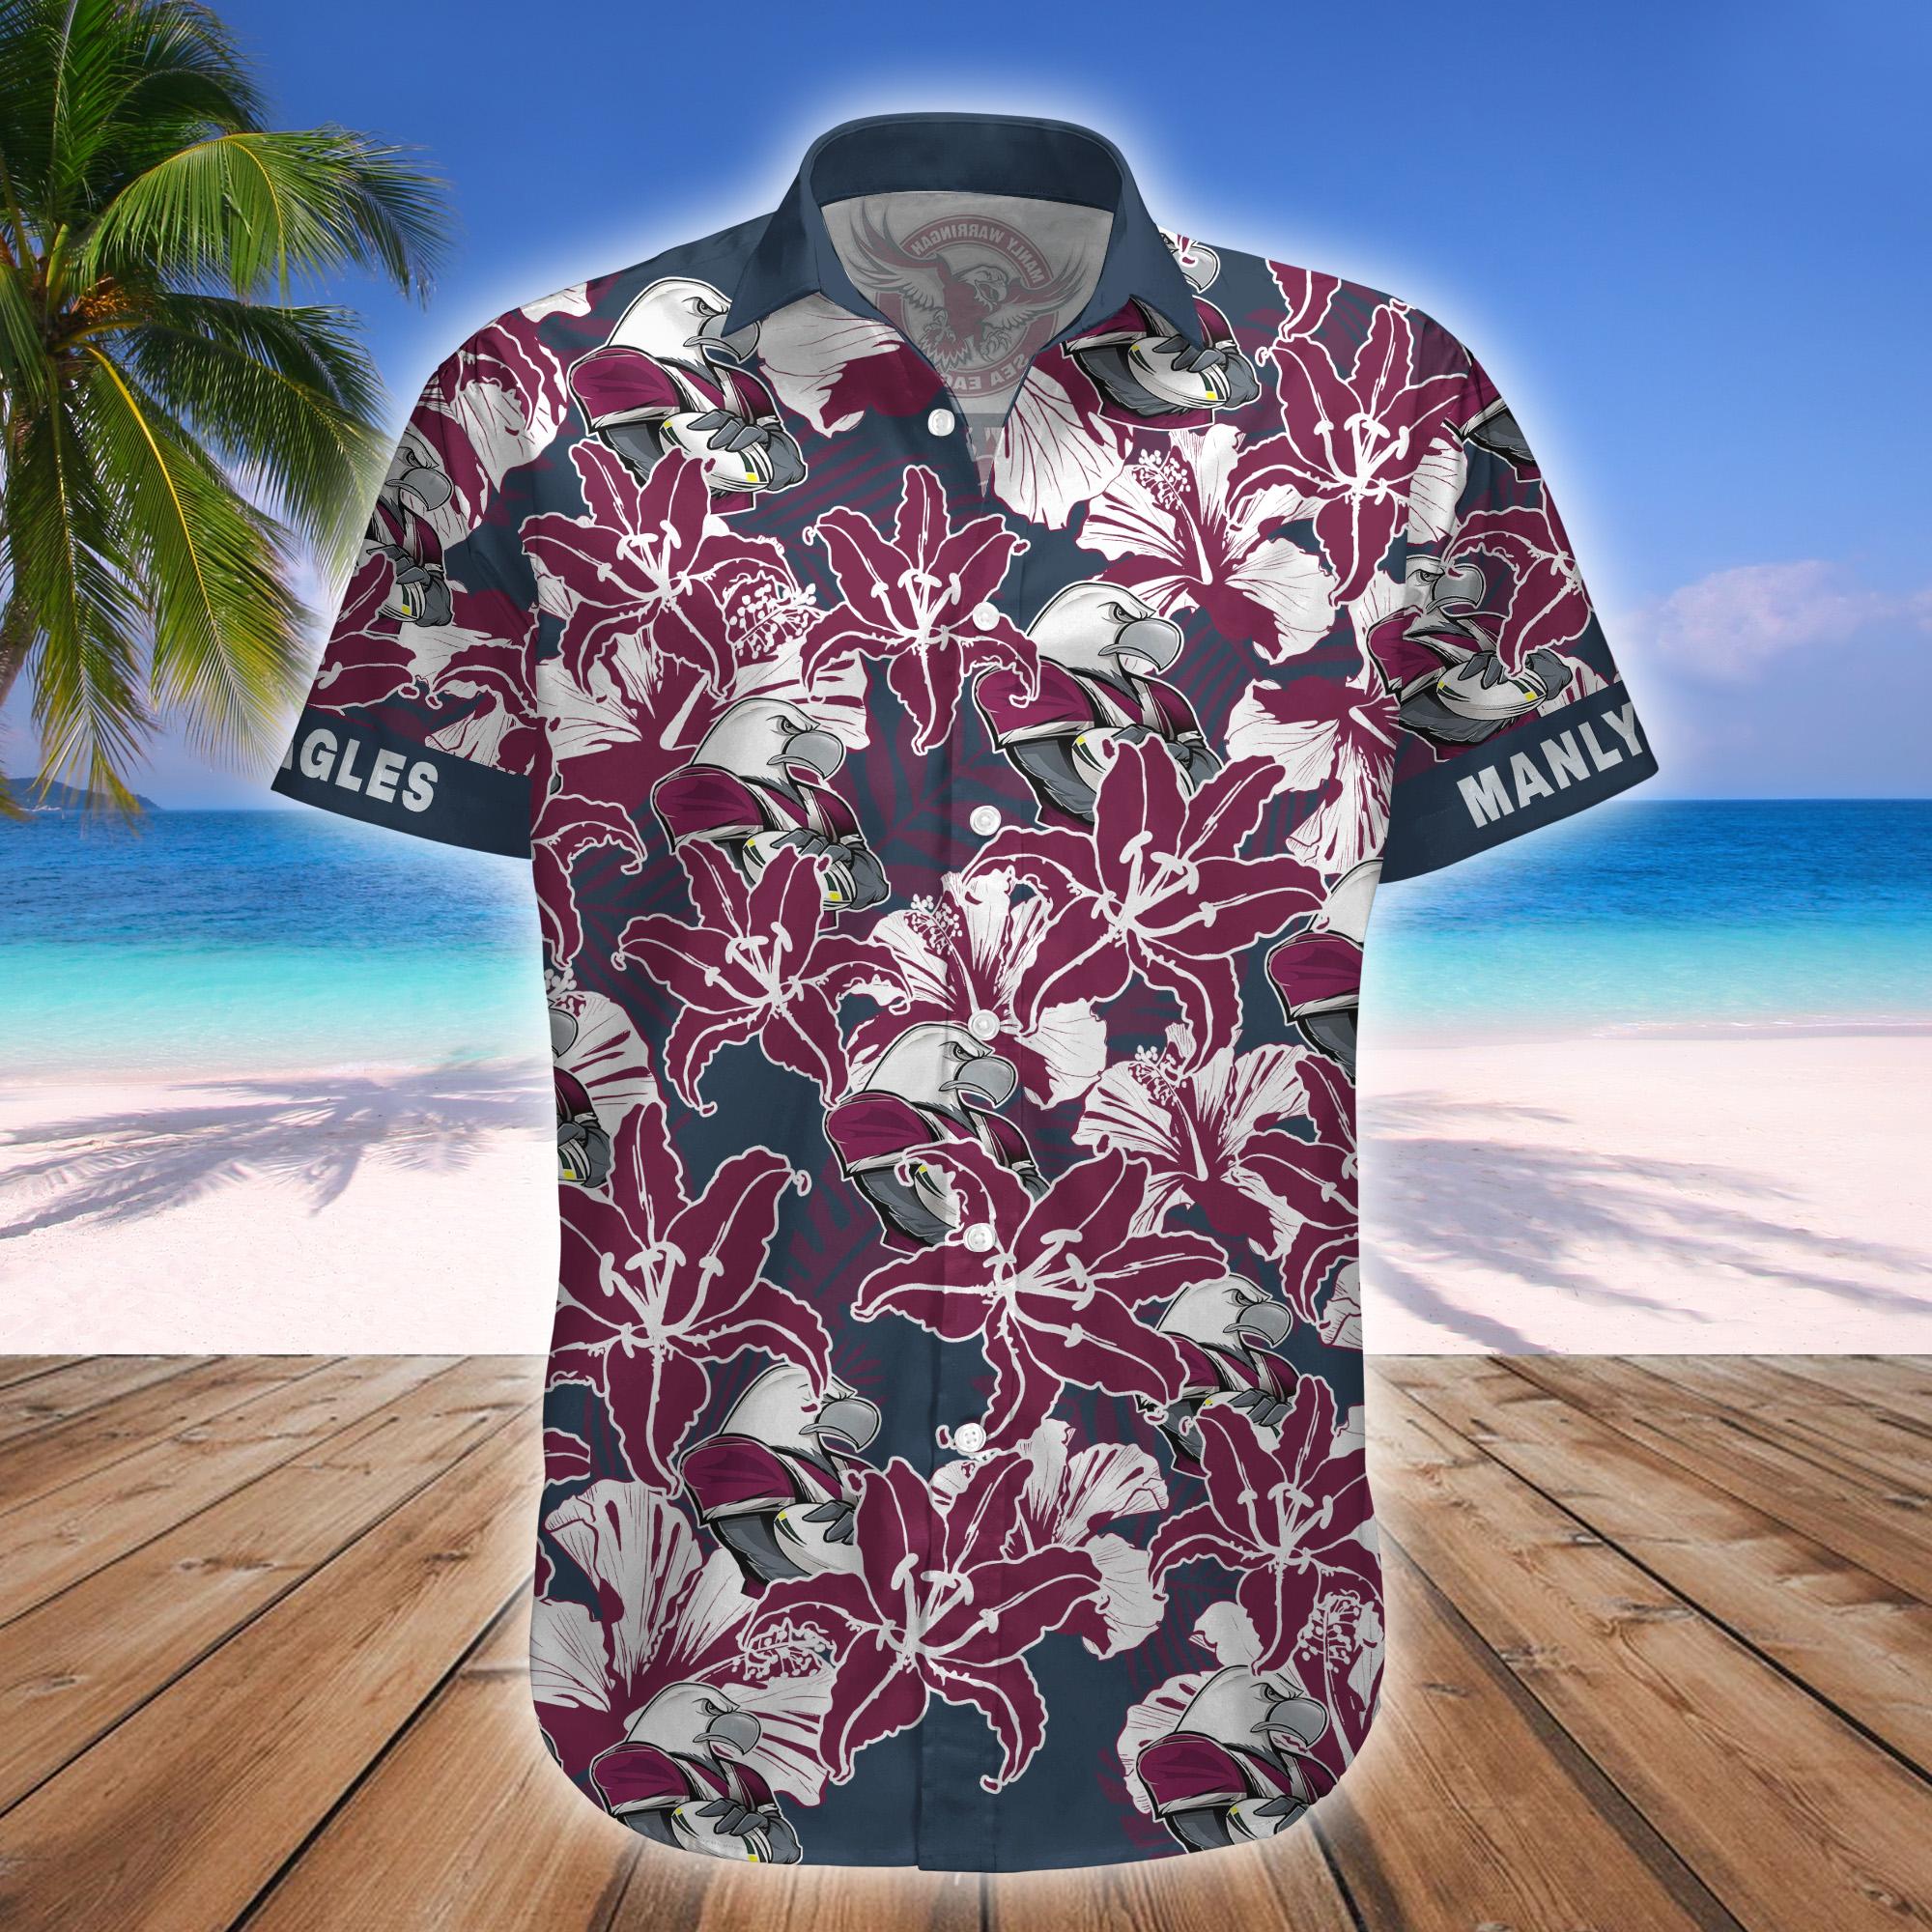 Manly Sea Eagles Mascot NRL Hawaiian Shirt